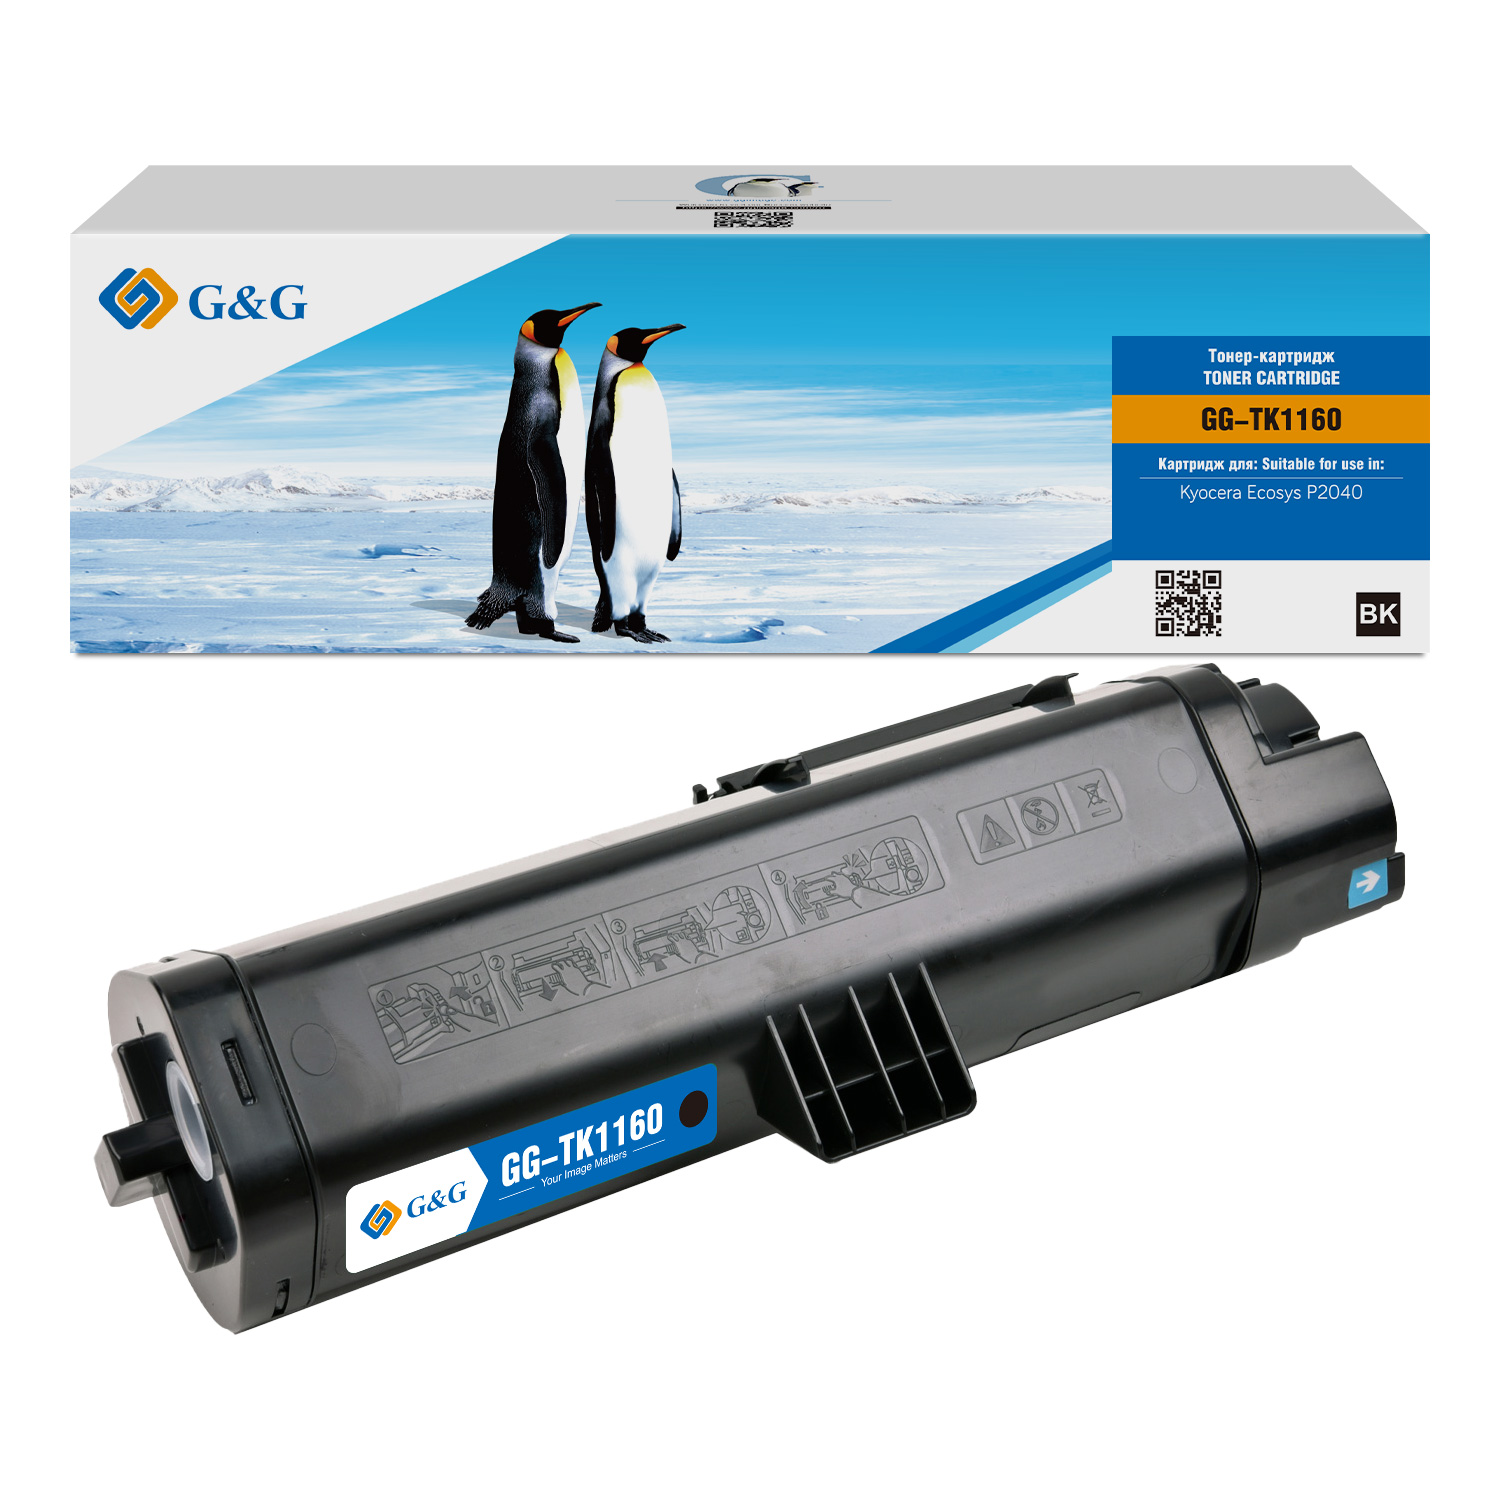 Картридж лазерный G&G GG-TK1160 черный (7200стр.) для Kyocera Ecosys P2040 пленка фьюзера для kyocera p2235 p2040 m2040 m2135 m2635 m2540 m2640 m2735 m2235 m2835 p2335 крепежный ремень